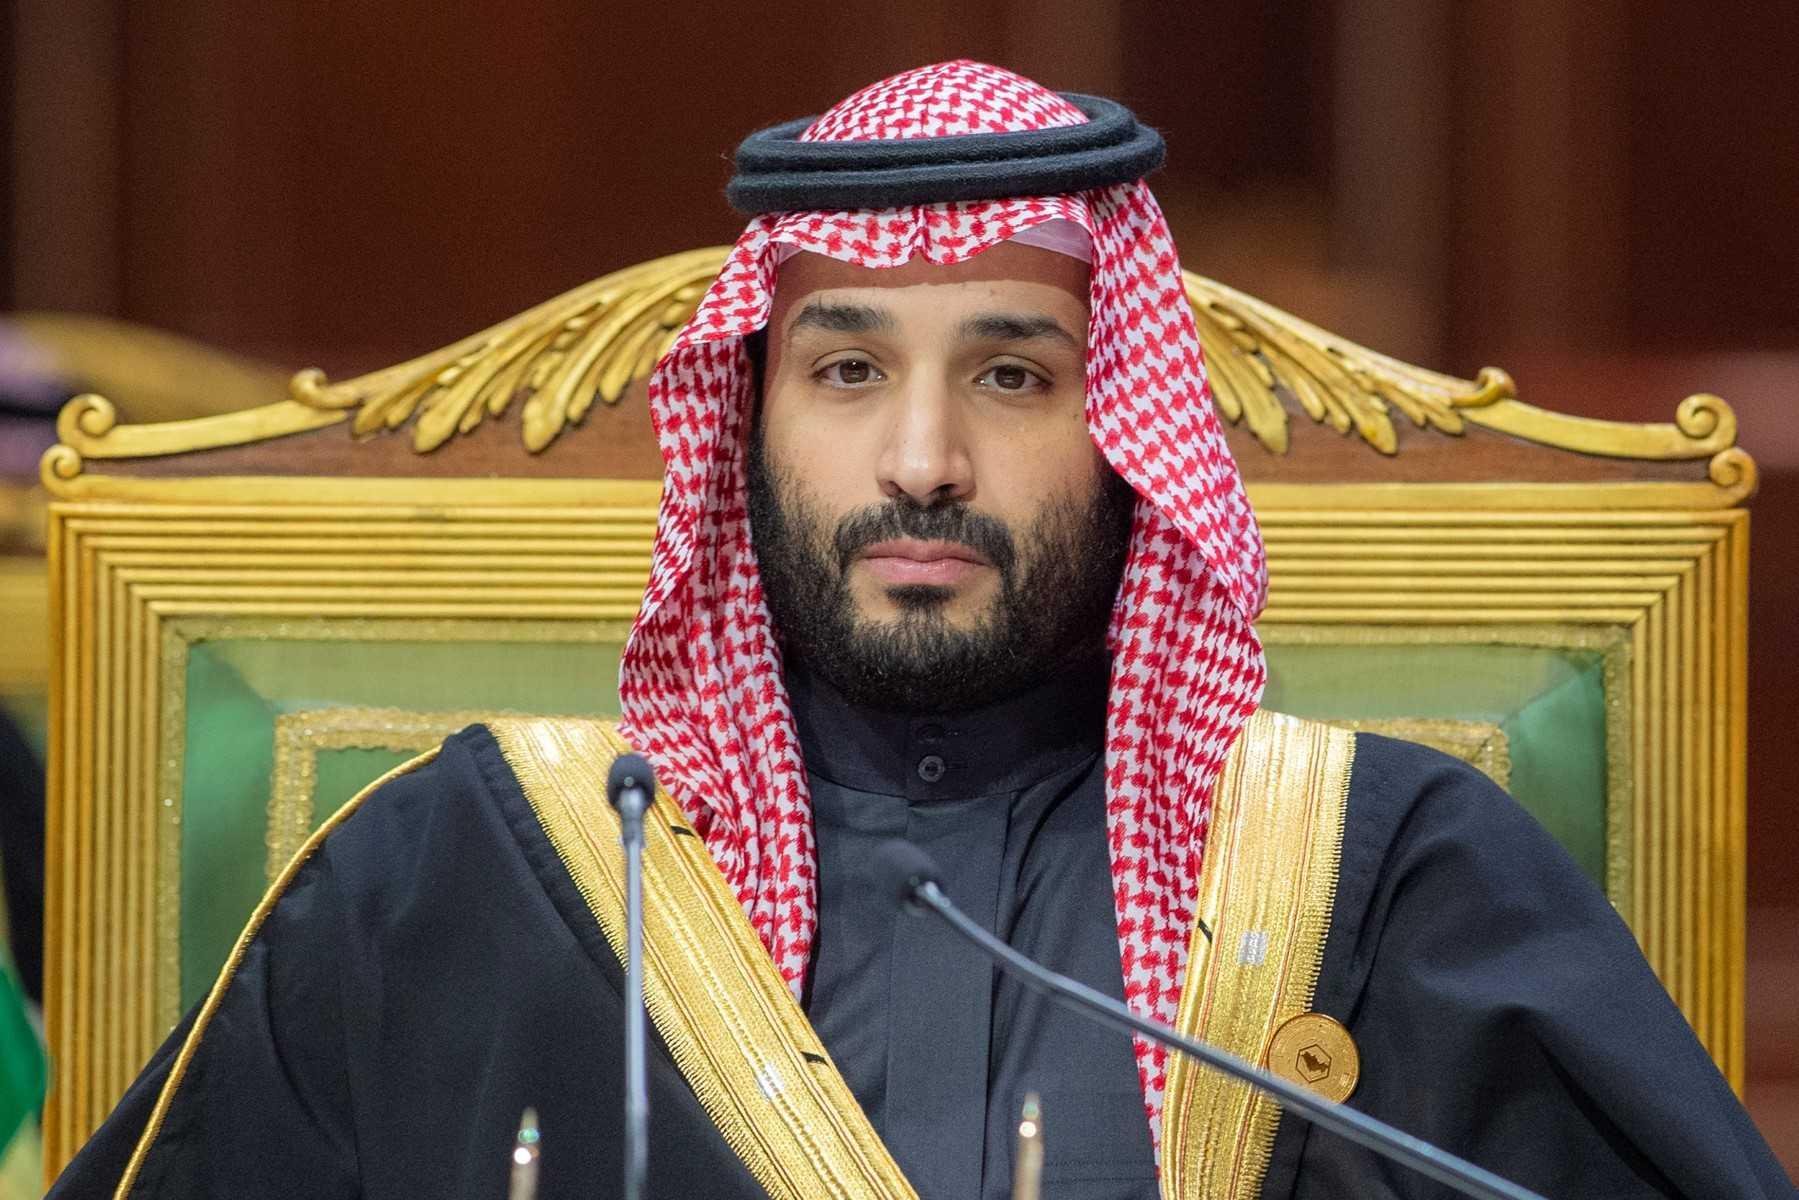 Putera Mahkota Mohammed bin Salman kini menjadi perdana menteri Arab Saudi. Gambar: AFP